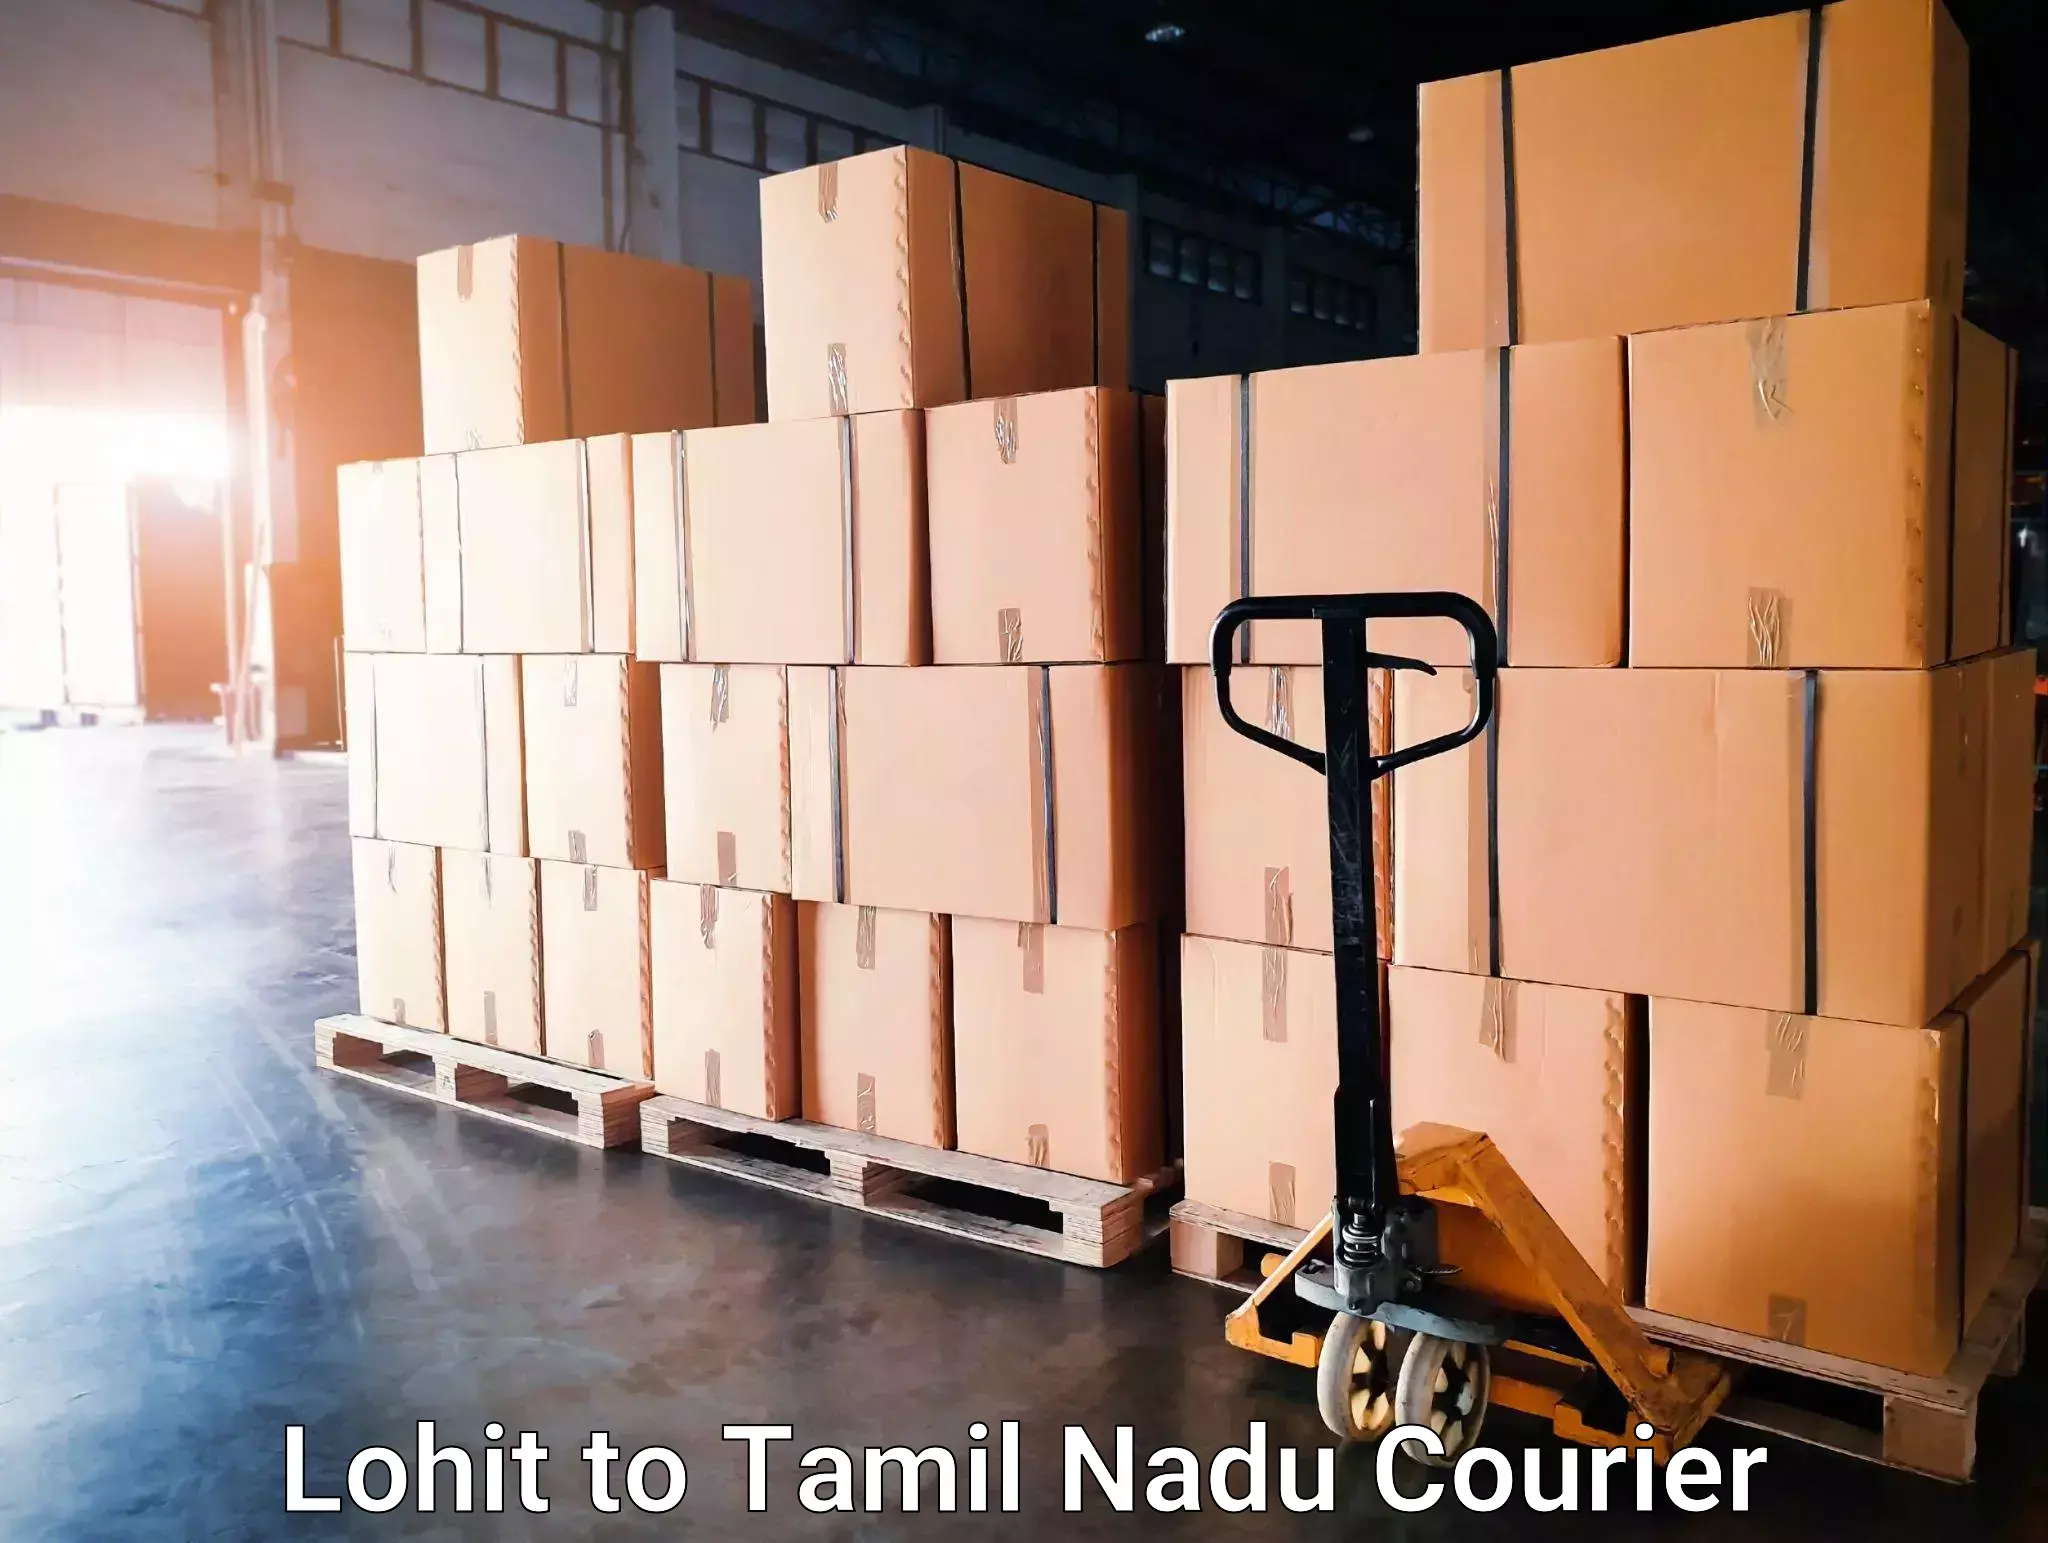 Express logistics service Lohit to Tamil Nadu